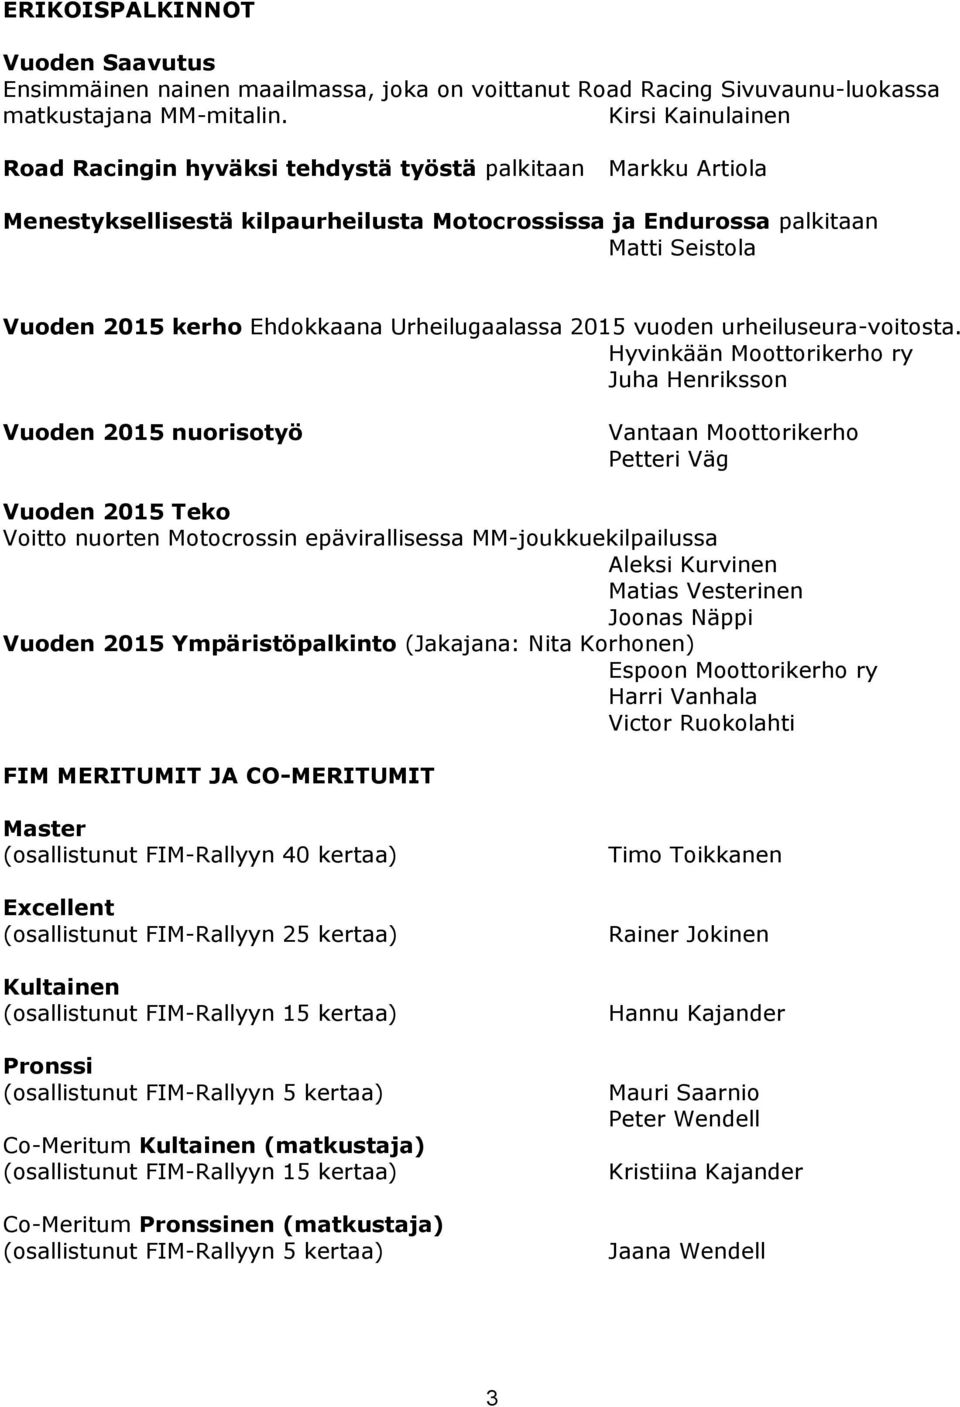 Urheilugaalassa 2015 vuoden urheiluseura-voitosta.